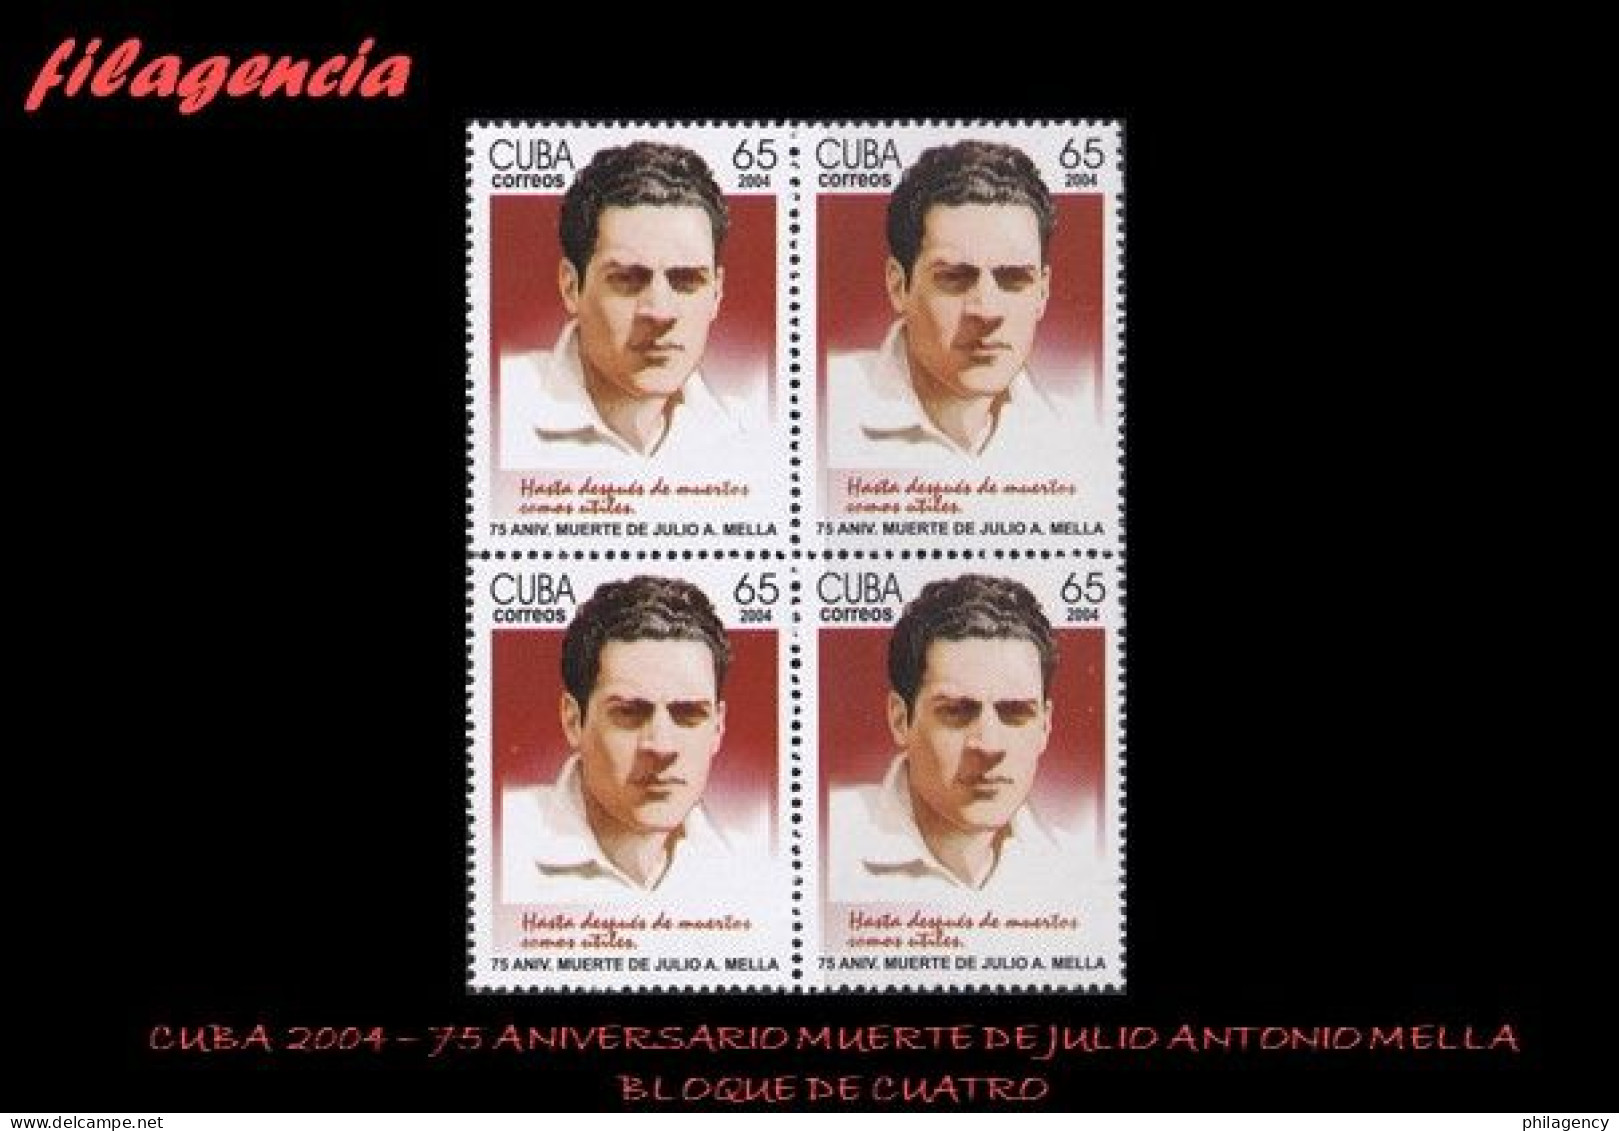 CUBA. BLOQUES DE CUATRO. 2004-05 75 ANIVERSARIO DE LA MUERTE DE JULIO ANTONIO MELLA. LÍDER ESTUDIANTIL - Nuevos